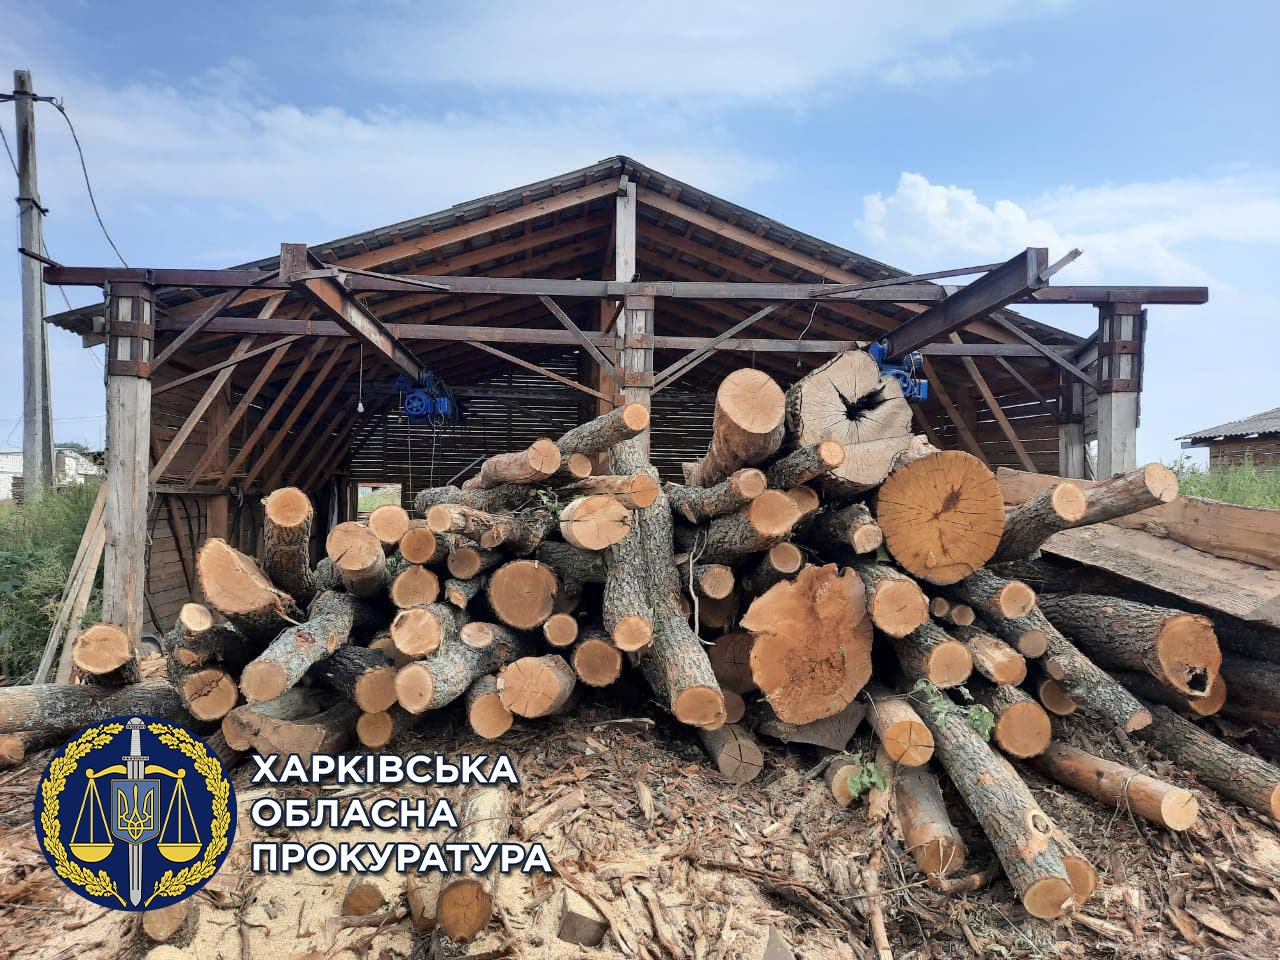 Бывшему директору ГП "Гутянское лесное хозяйство" Виктору Сысе вручили новое подозрение о порубке деревьев - фото 2